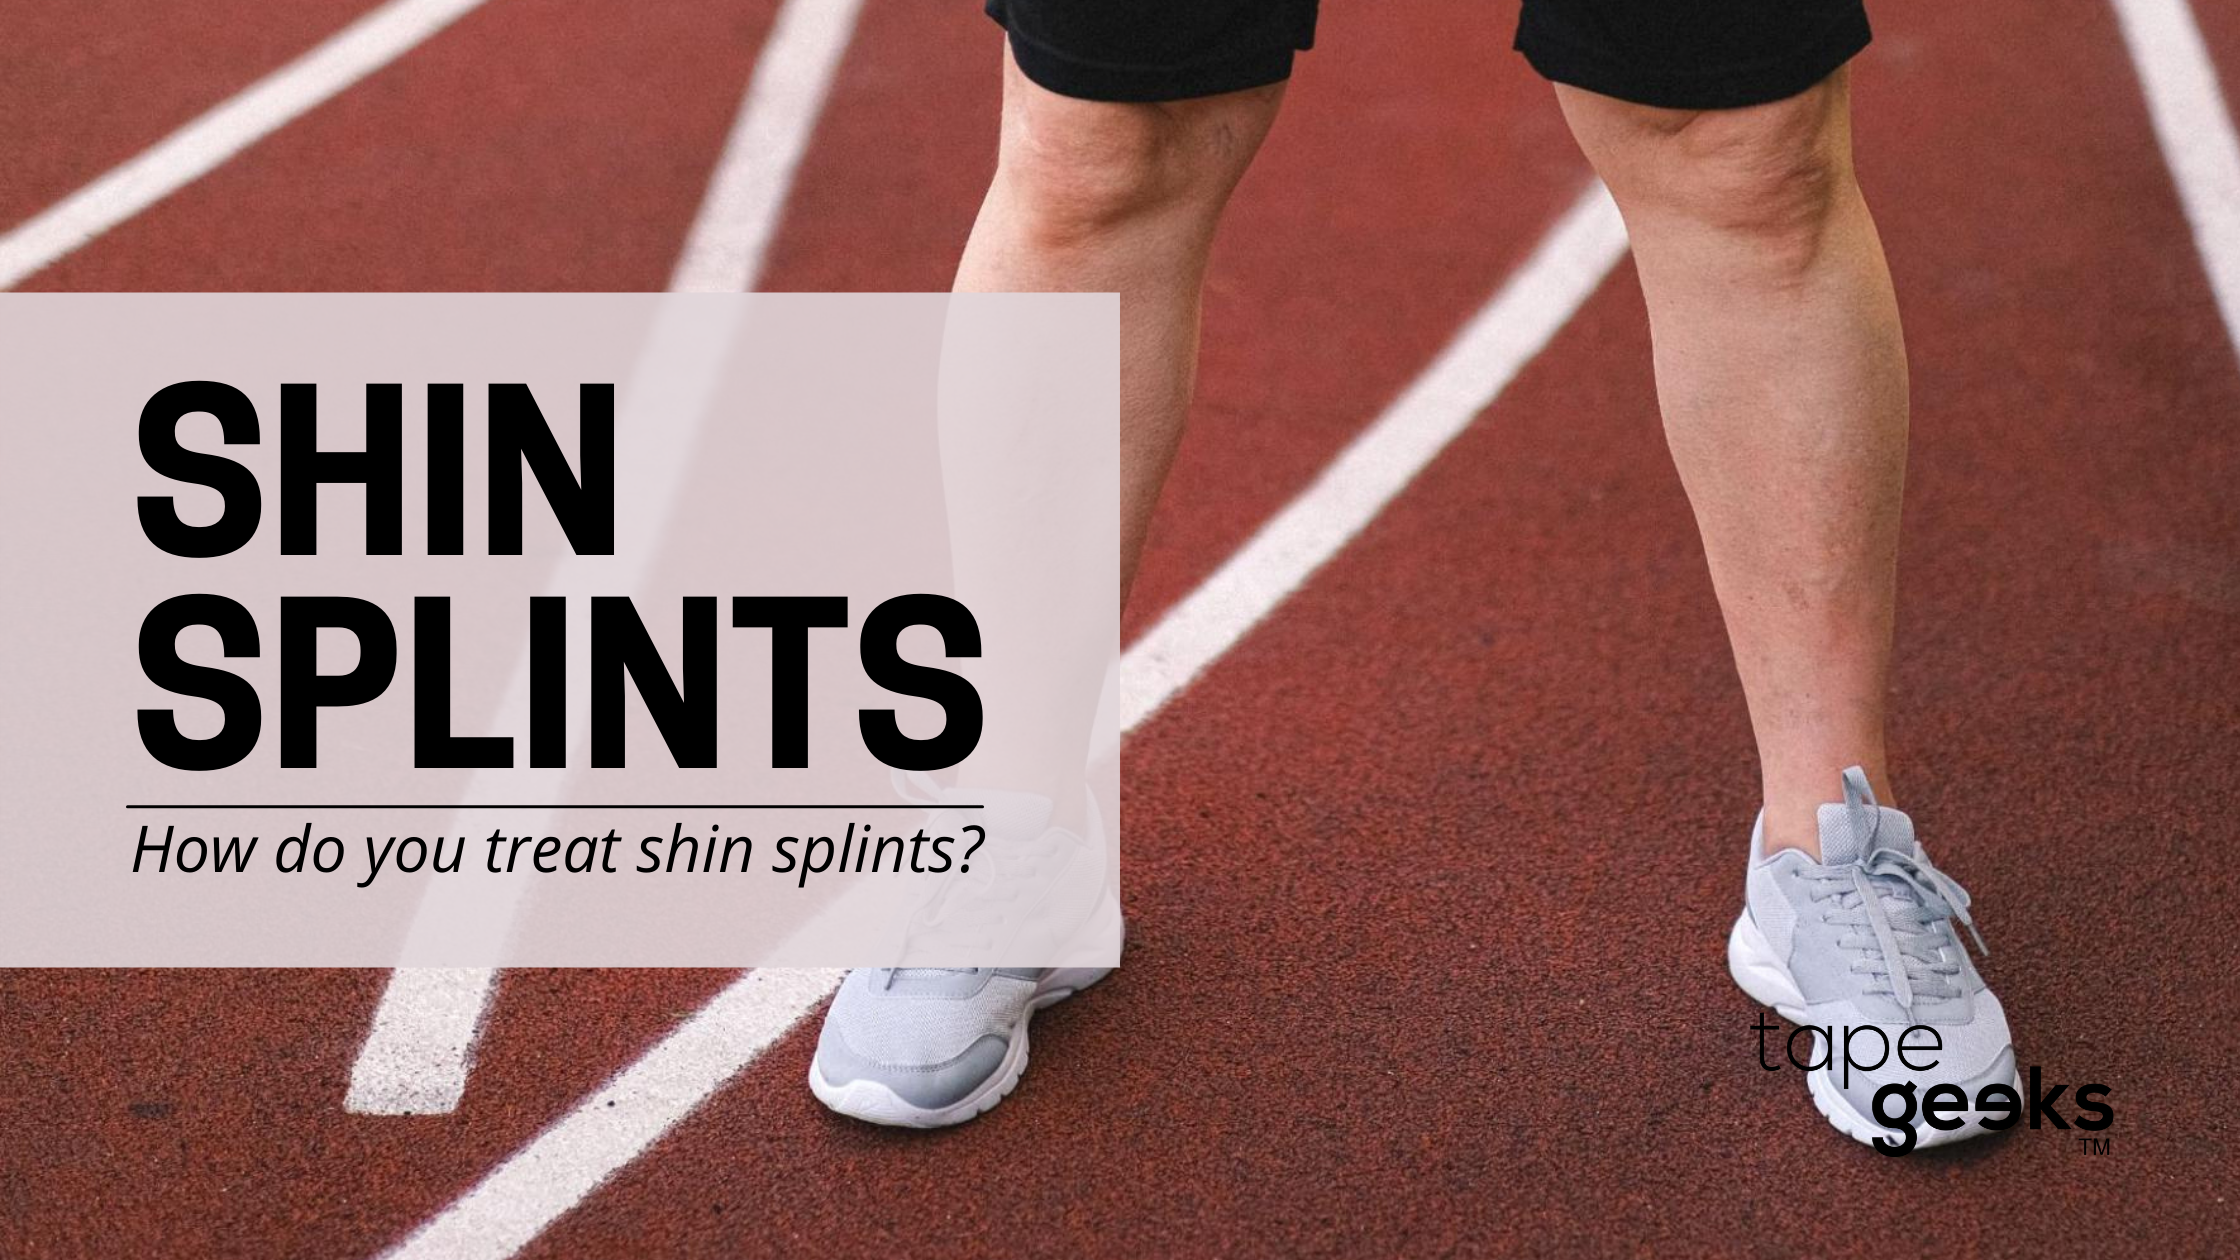 Shin splints taping  Tape Geeks - TapeGeeks